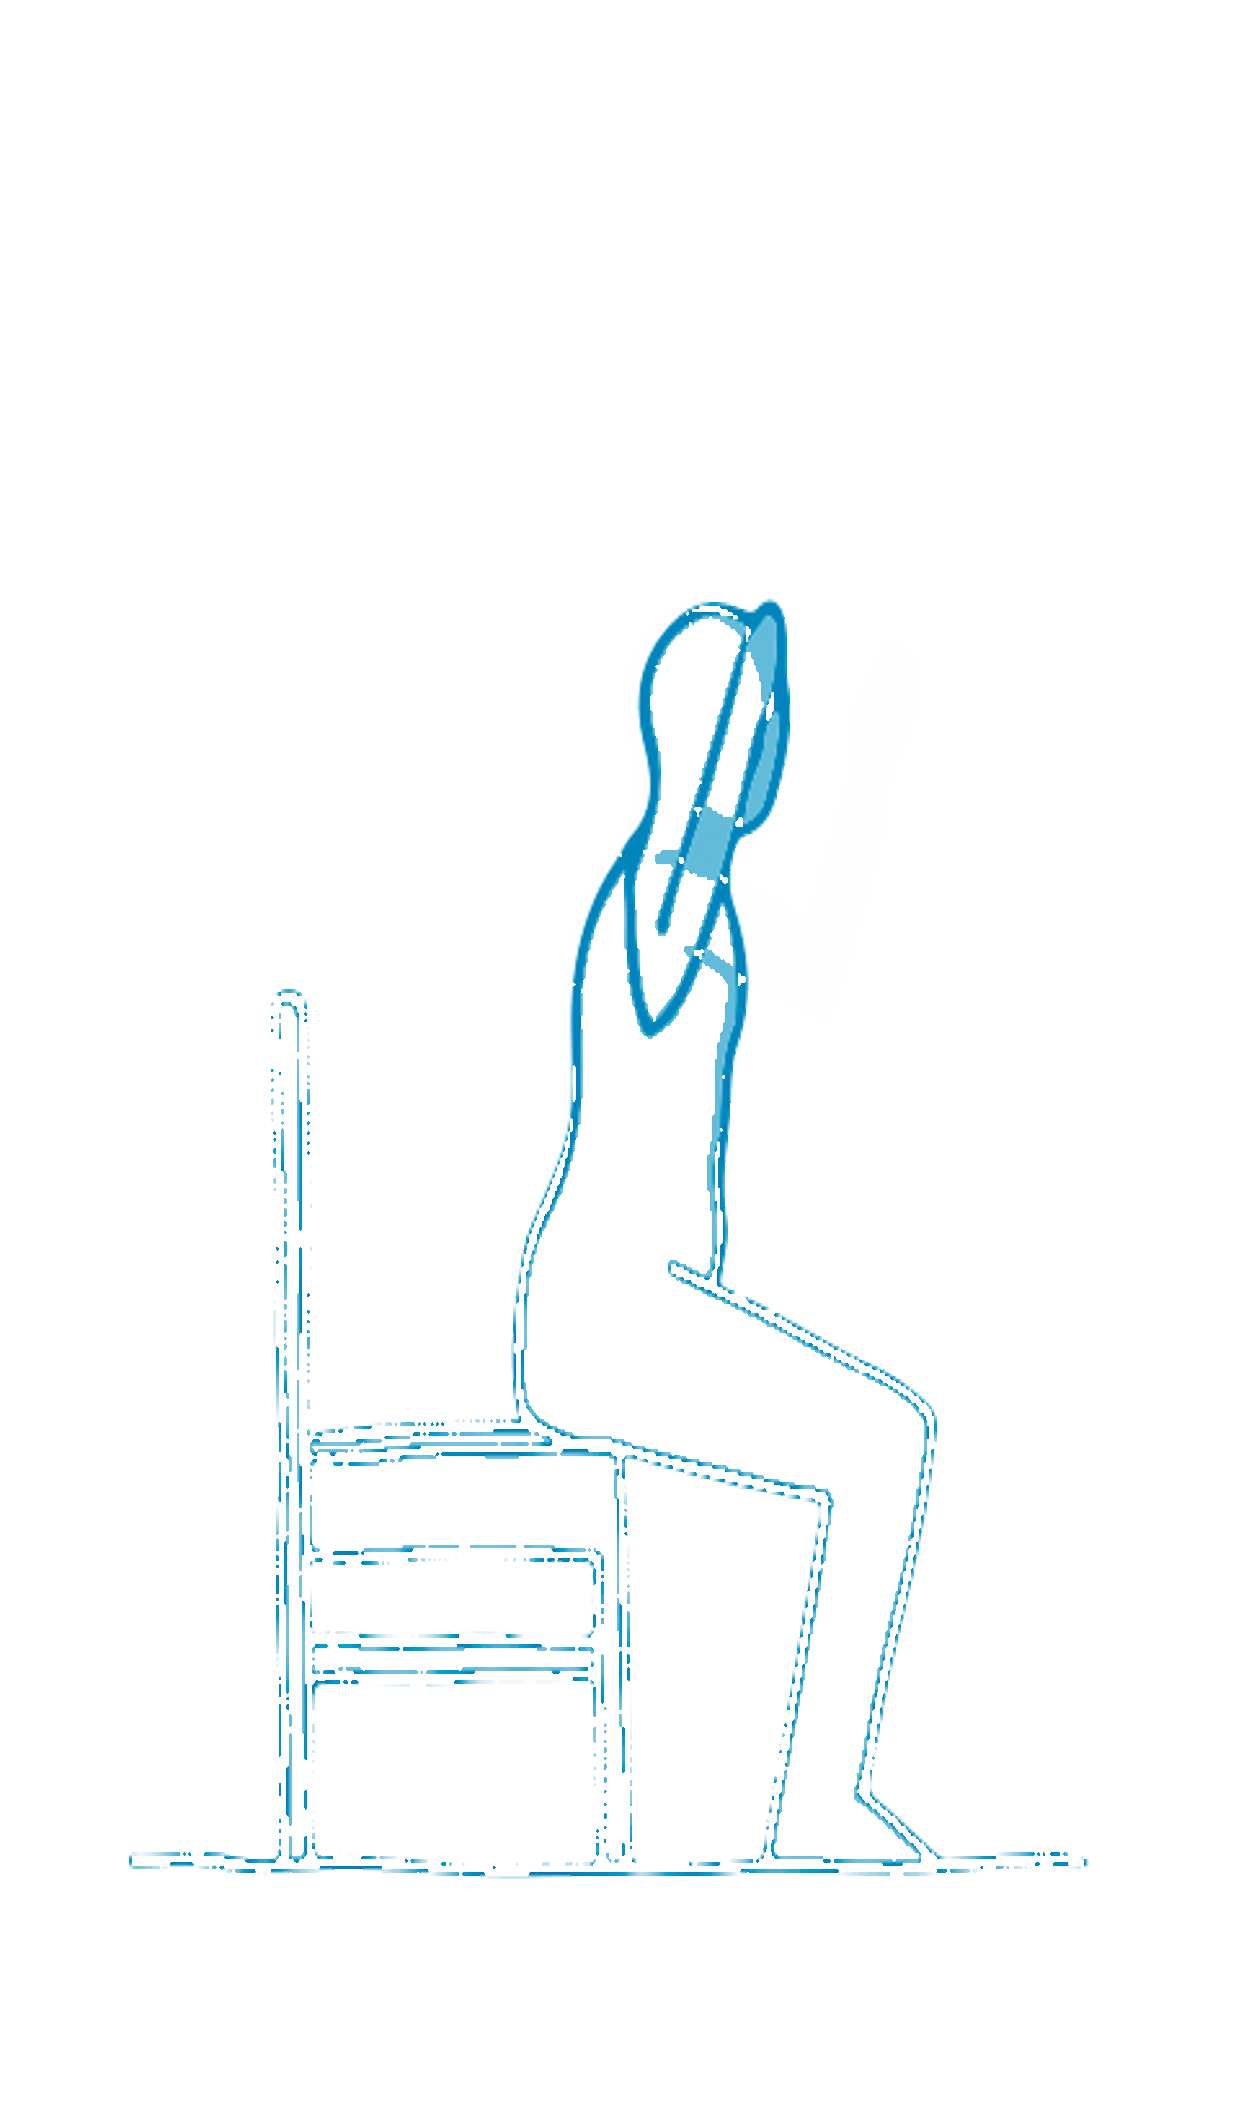 Animation: Sitzende Figur bewegt angewinkelte Arme vor und zurück